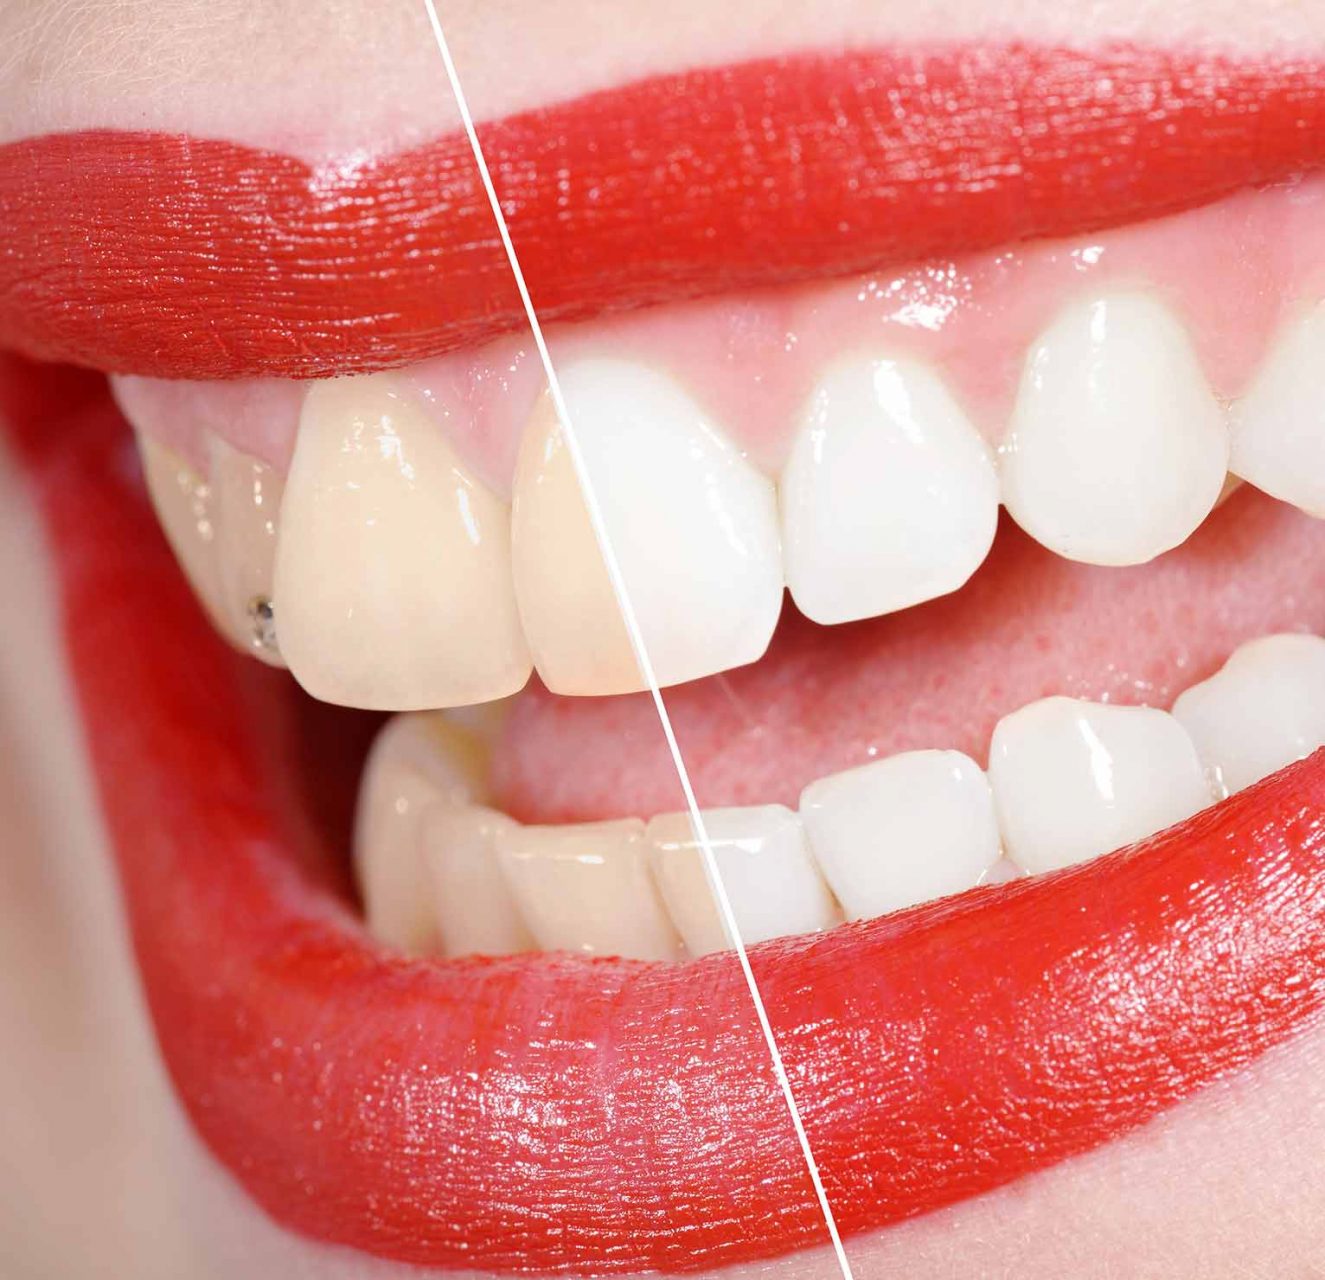 Vergleich vor und nach Zahnaufhellung